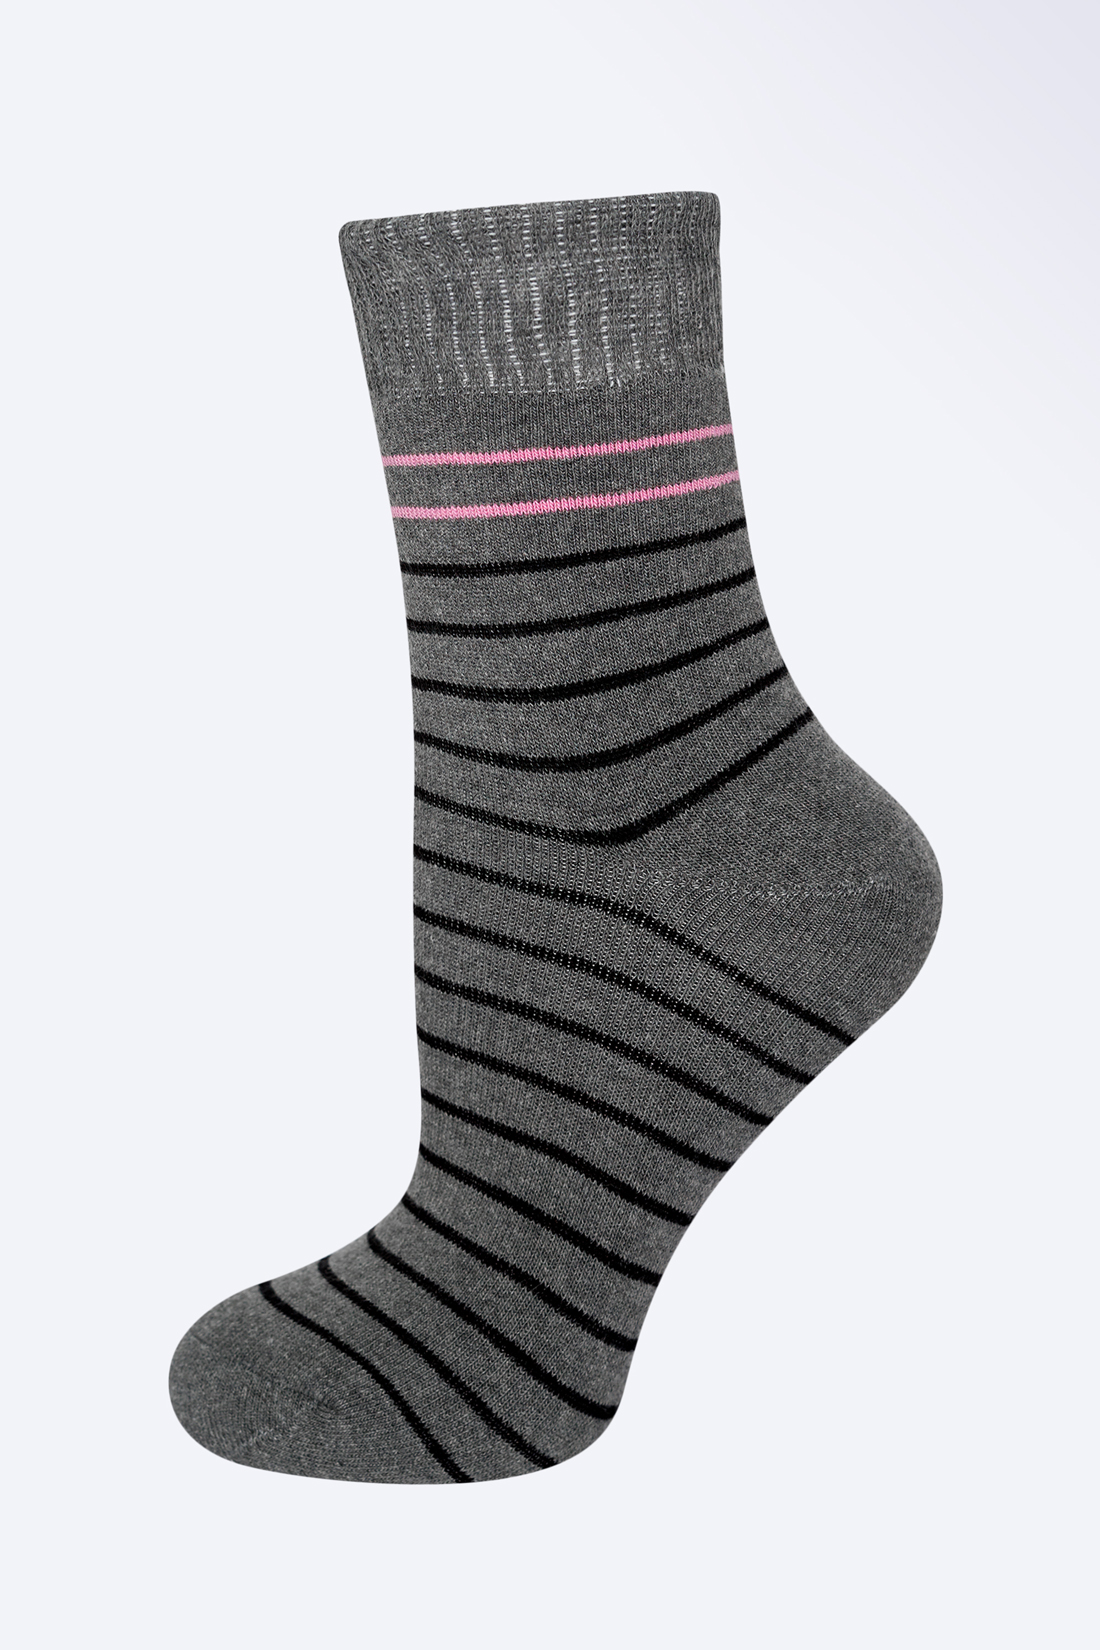 Носки с полосками (арт. baon B399524), размер 38/40, цвет zircon melange#серый Носки с полосками (арт. baon B399524) - фото 1